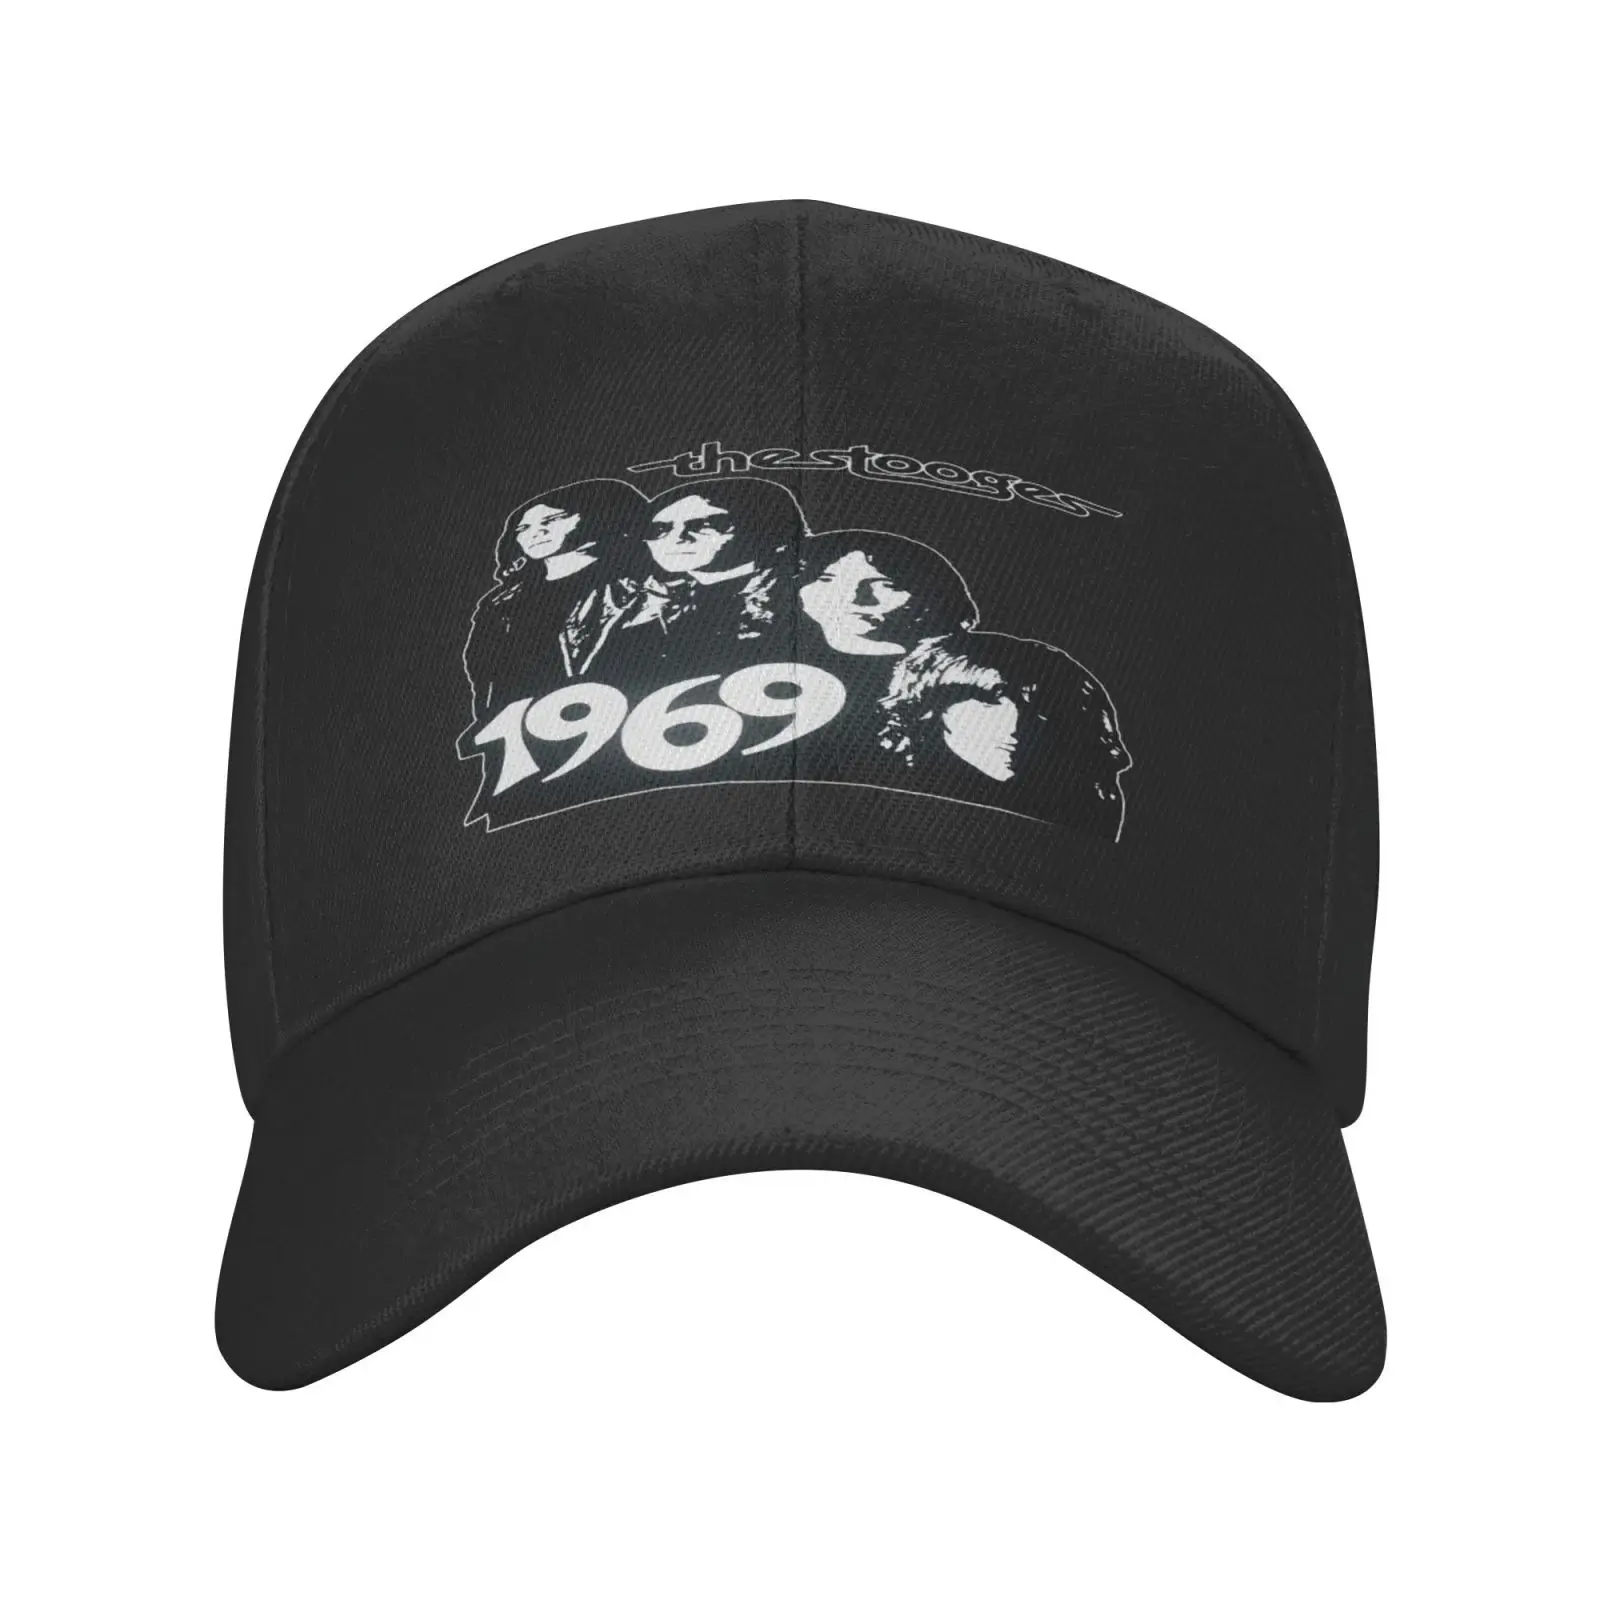 

Кепка The Stooges 1969, Мужская Панама, женская мужская шапка, женский берет, шапки для девочек, хип-хоп Панама, Стильная кепка с индивидуальным лого...